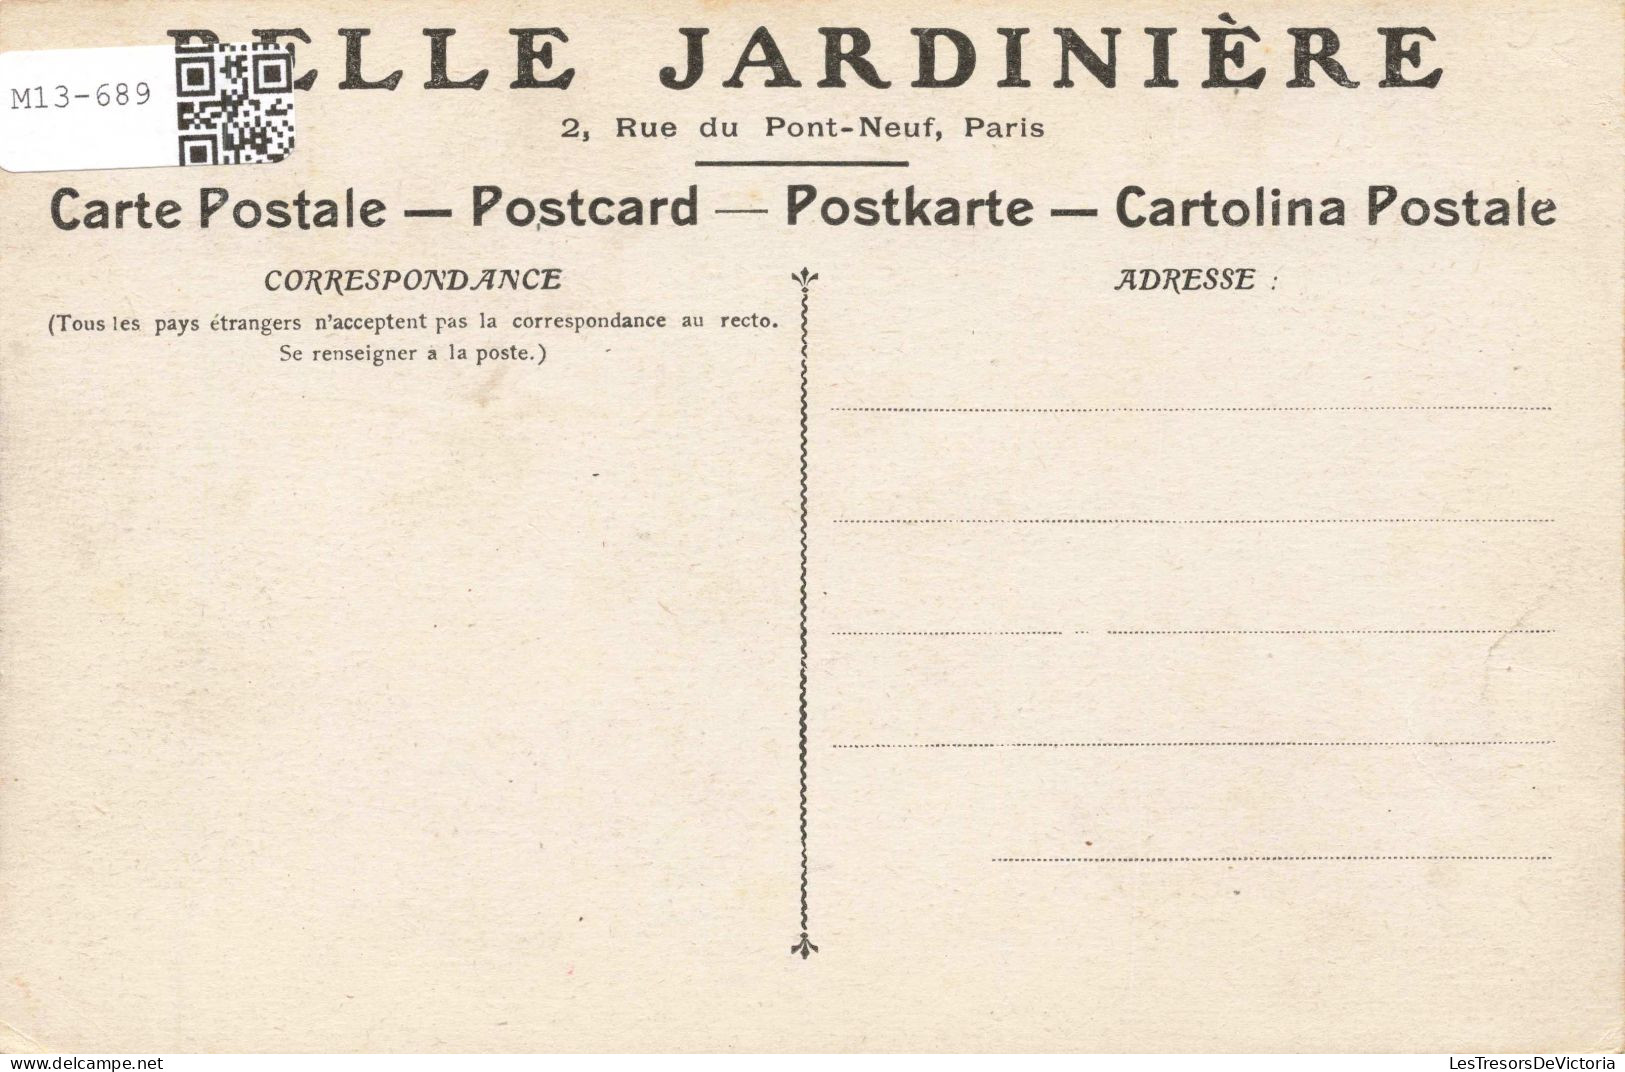 FRANCE - Paris - Rue Du Pont Neuf - Vue De La Maison Principale - Carte Postale Ancienne - Plazas